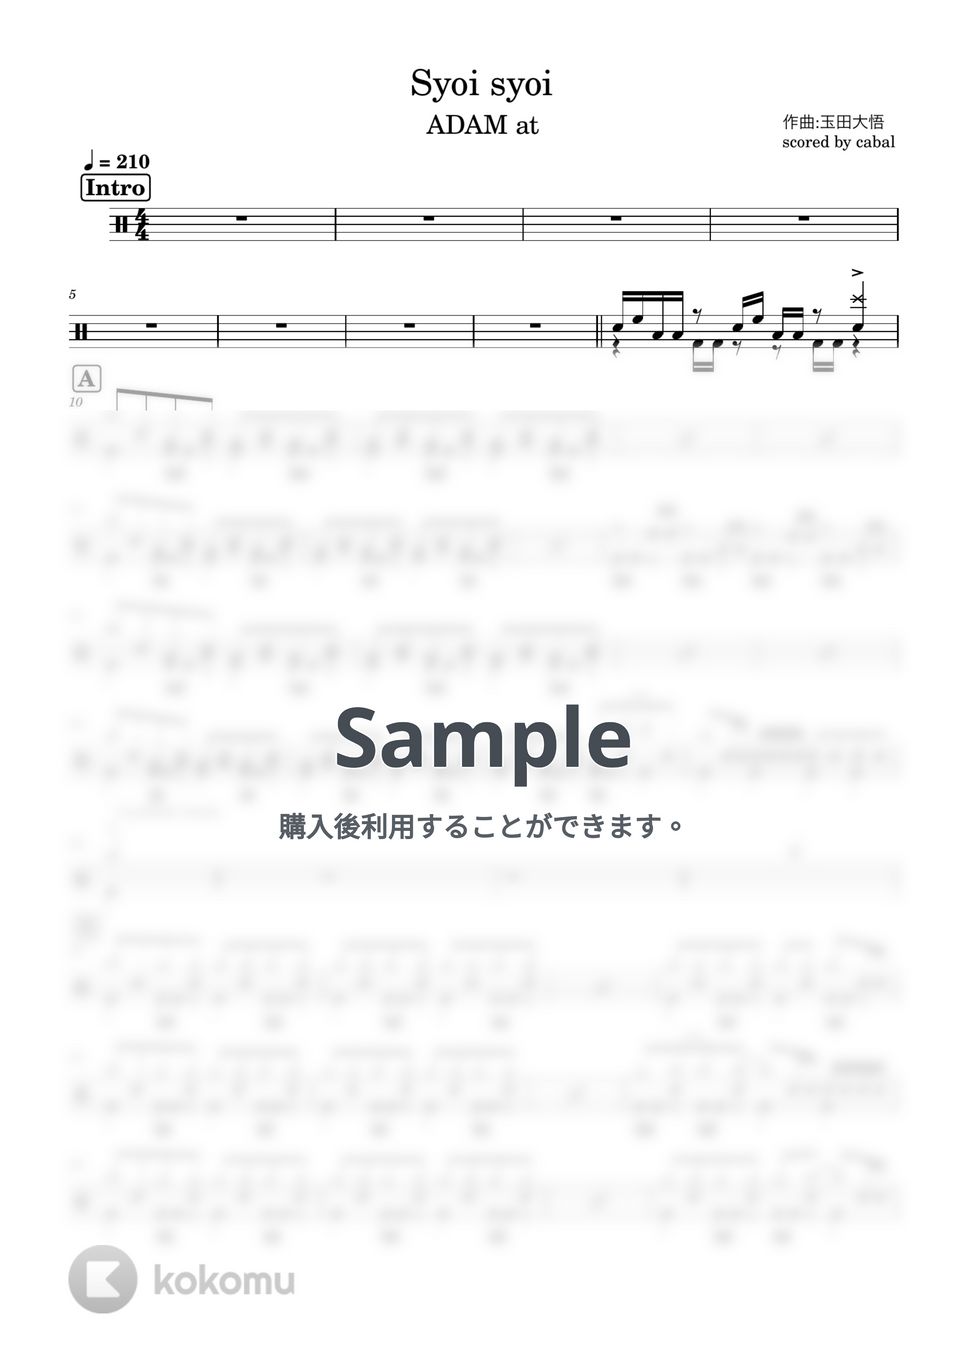 ADAM at - Syoi syoi (ドラム譜面) by cabal